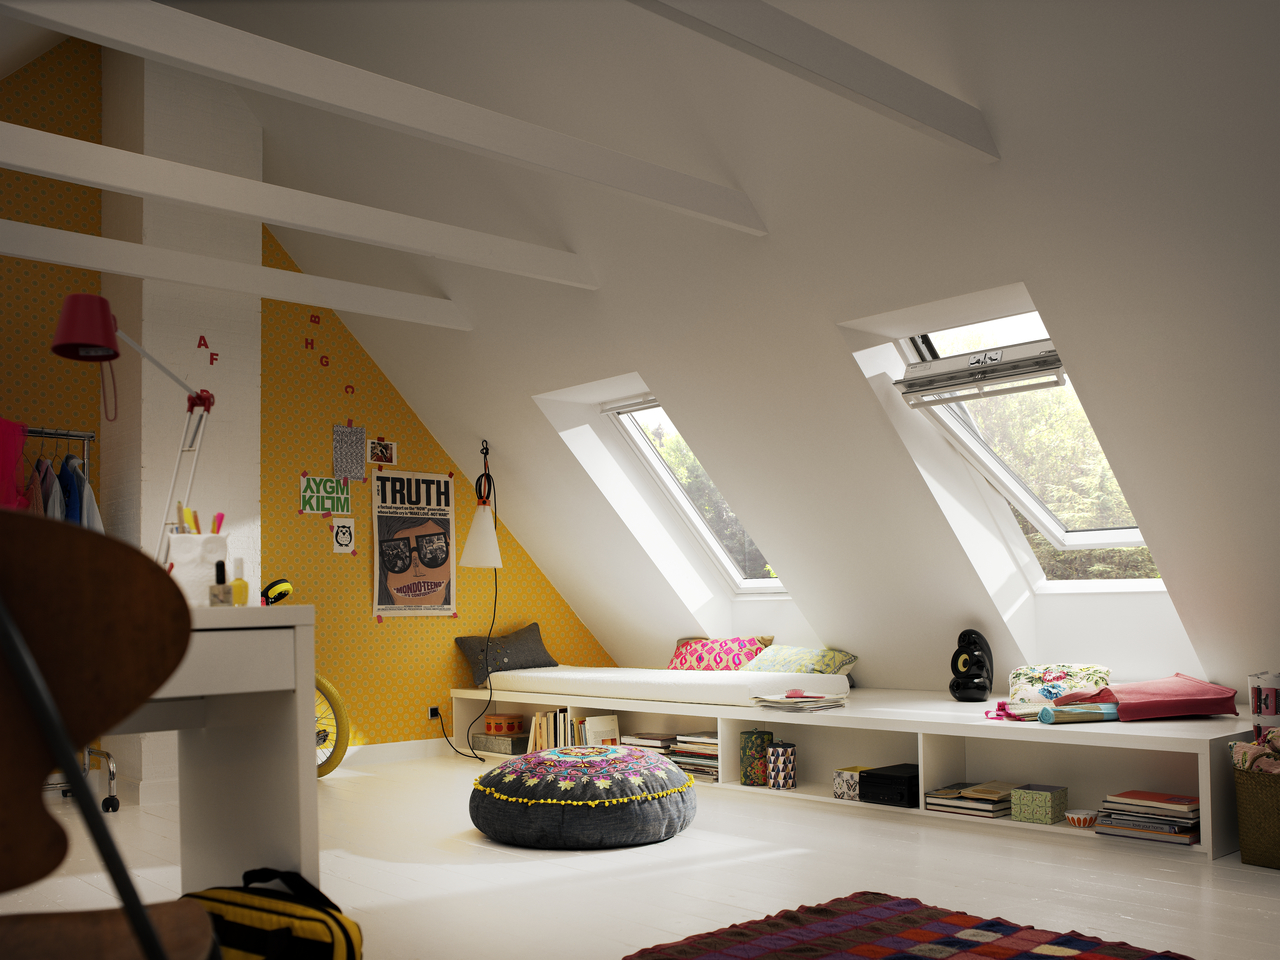 Európania považujú za zdravé bývanie interiér plný denného svetla a čerstvého vzduchu.